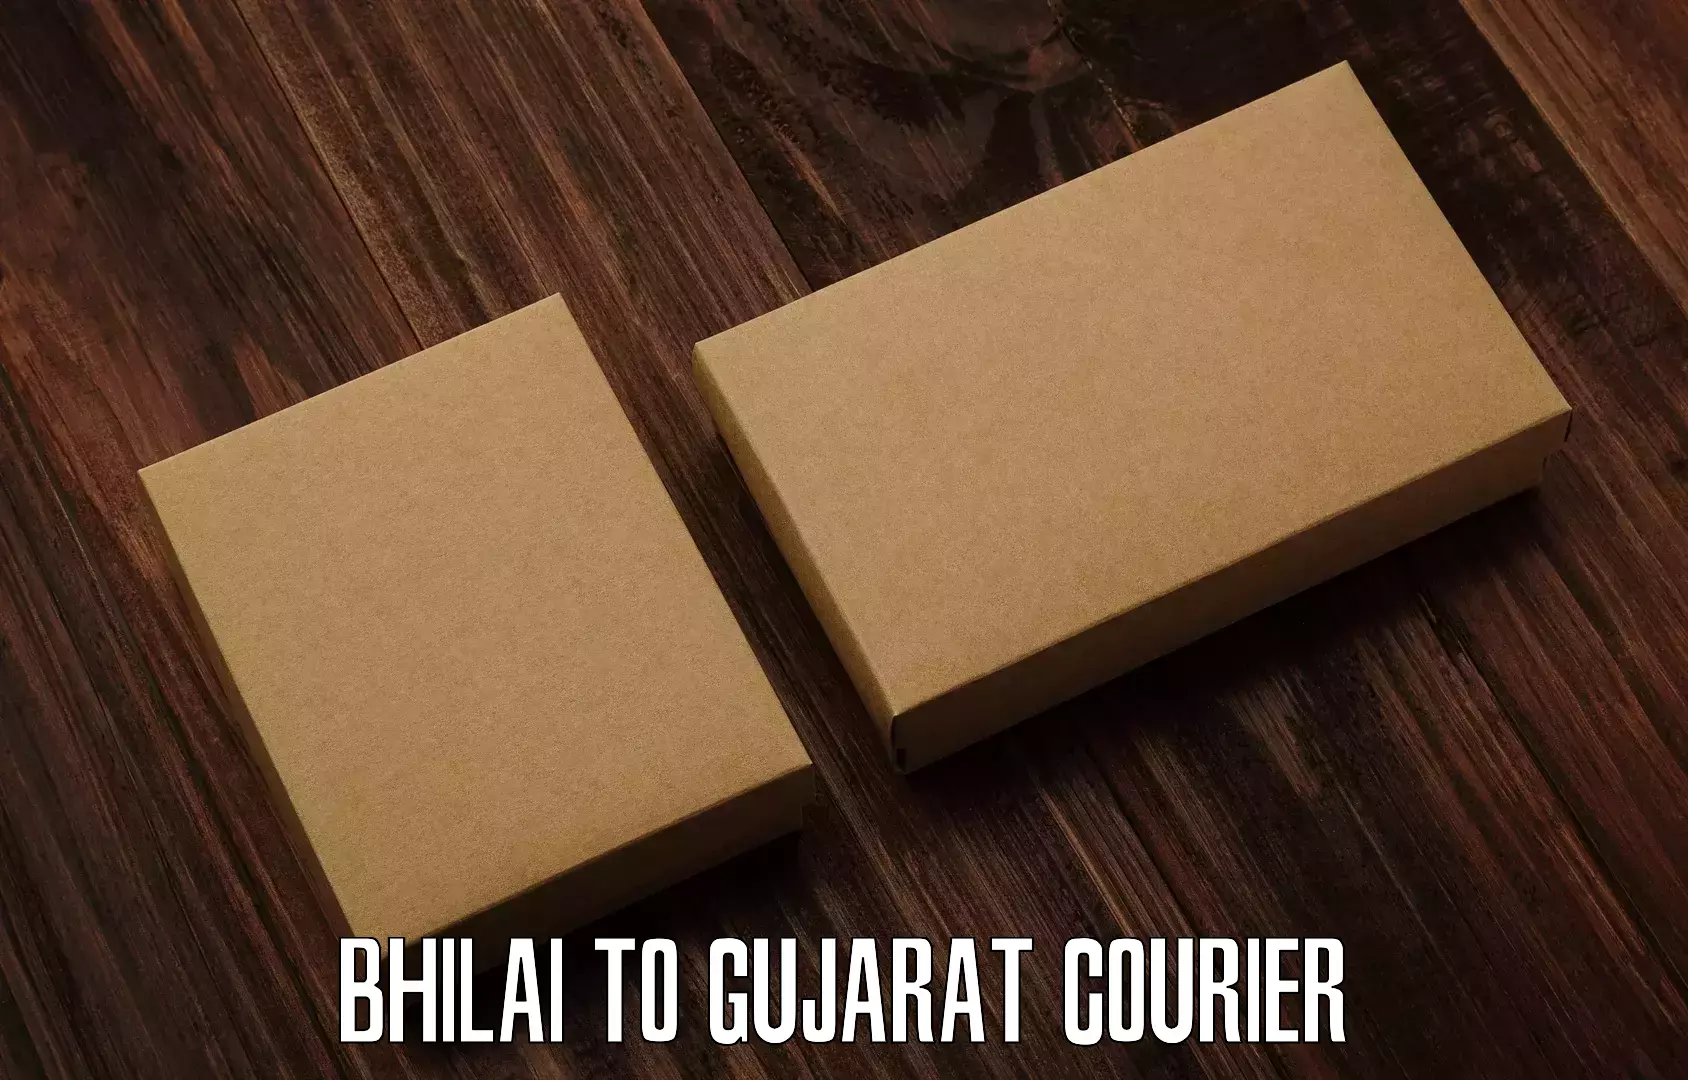 24-hour courier service Bhilai to Vagara